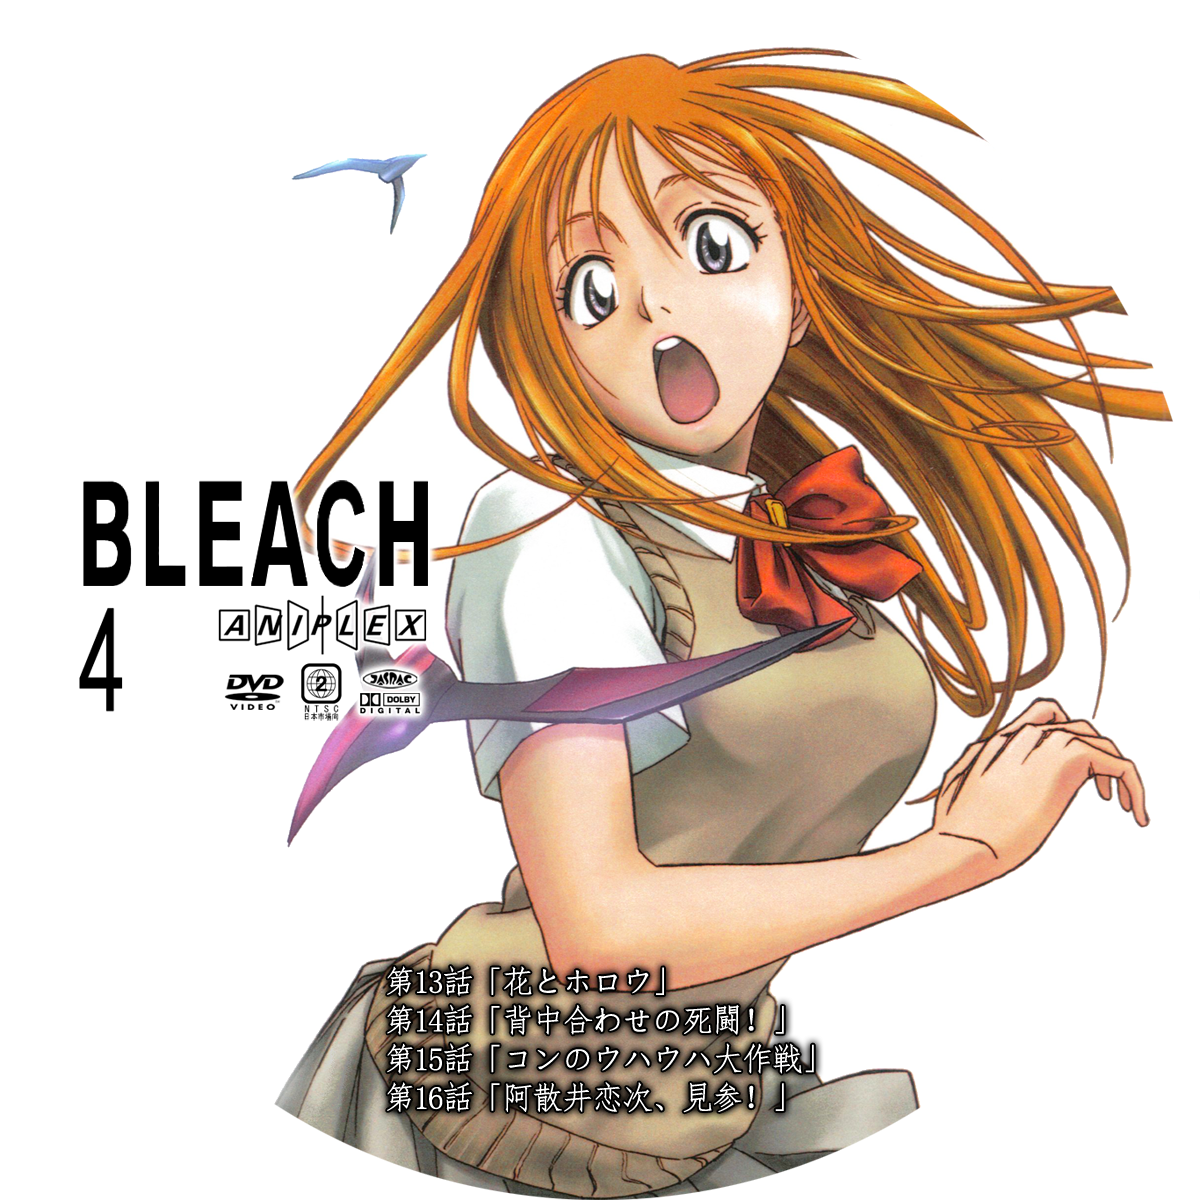 bleach episodes 3